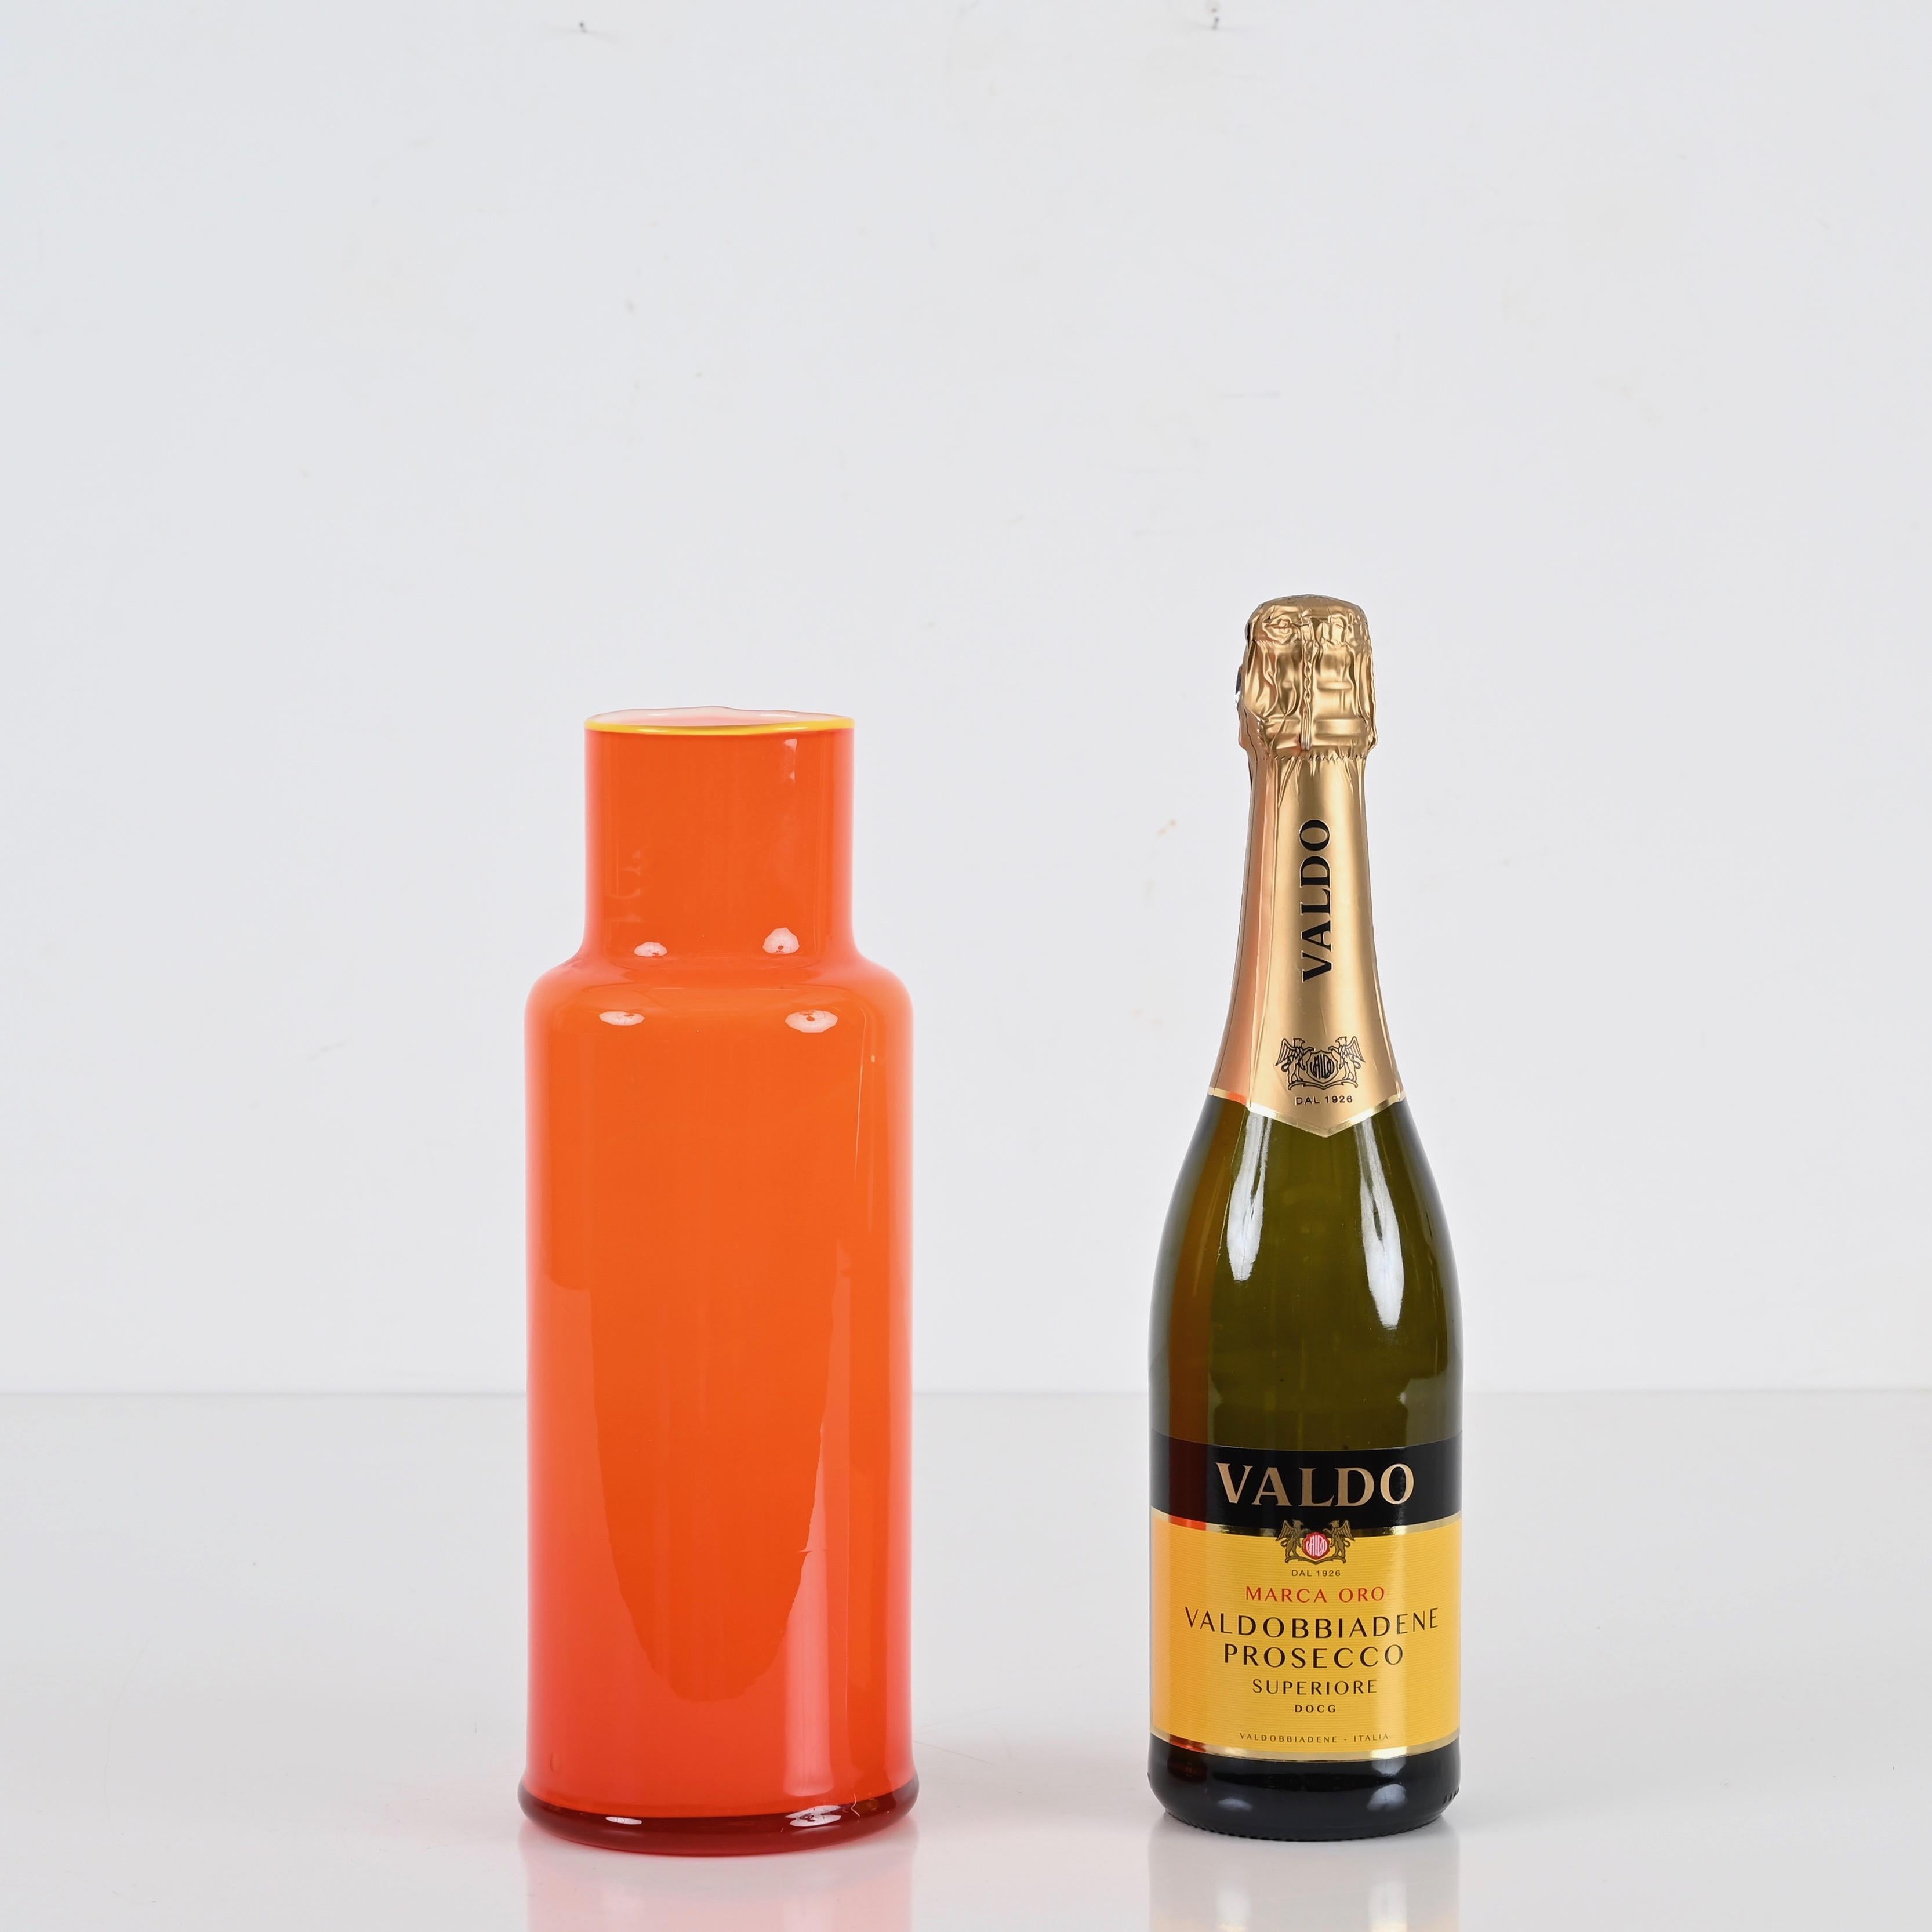 Étonnant vase en verre de Murano du milieu du siècle dans un verre encastré d'un orange vibrant. Cette belle pièce a été réalisée à Murano, en Italie, dans les années 1970.

La qualité du verre encastré et la forme sinueuse de ce vase sont